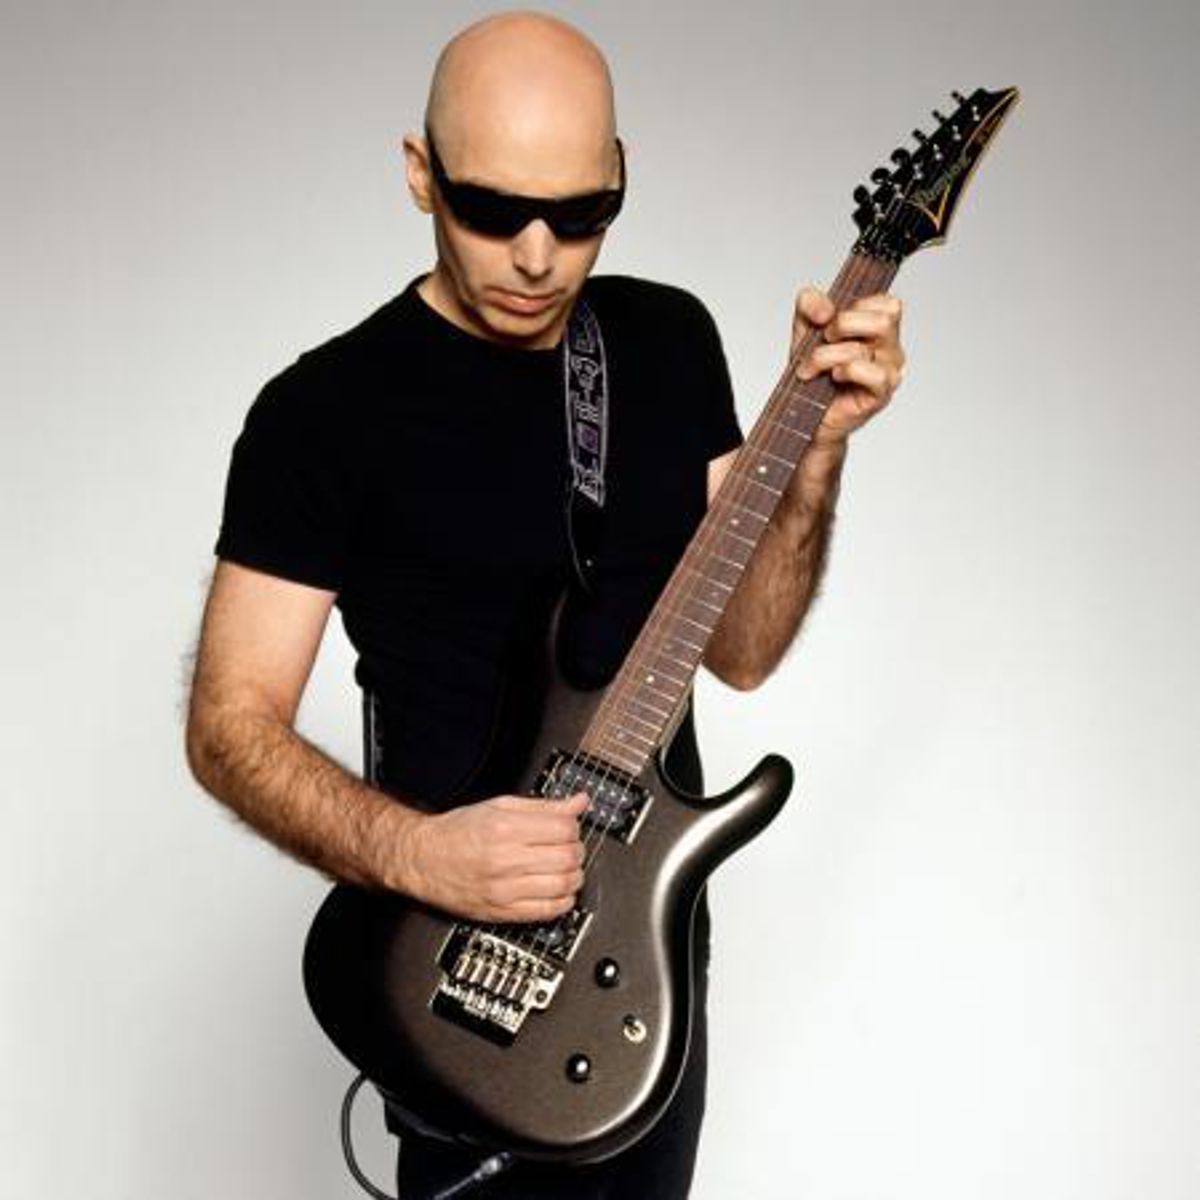 Joe Satriani - Gevecht met de akoestiek